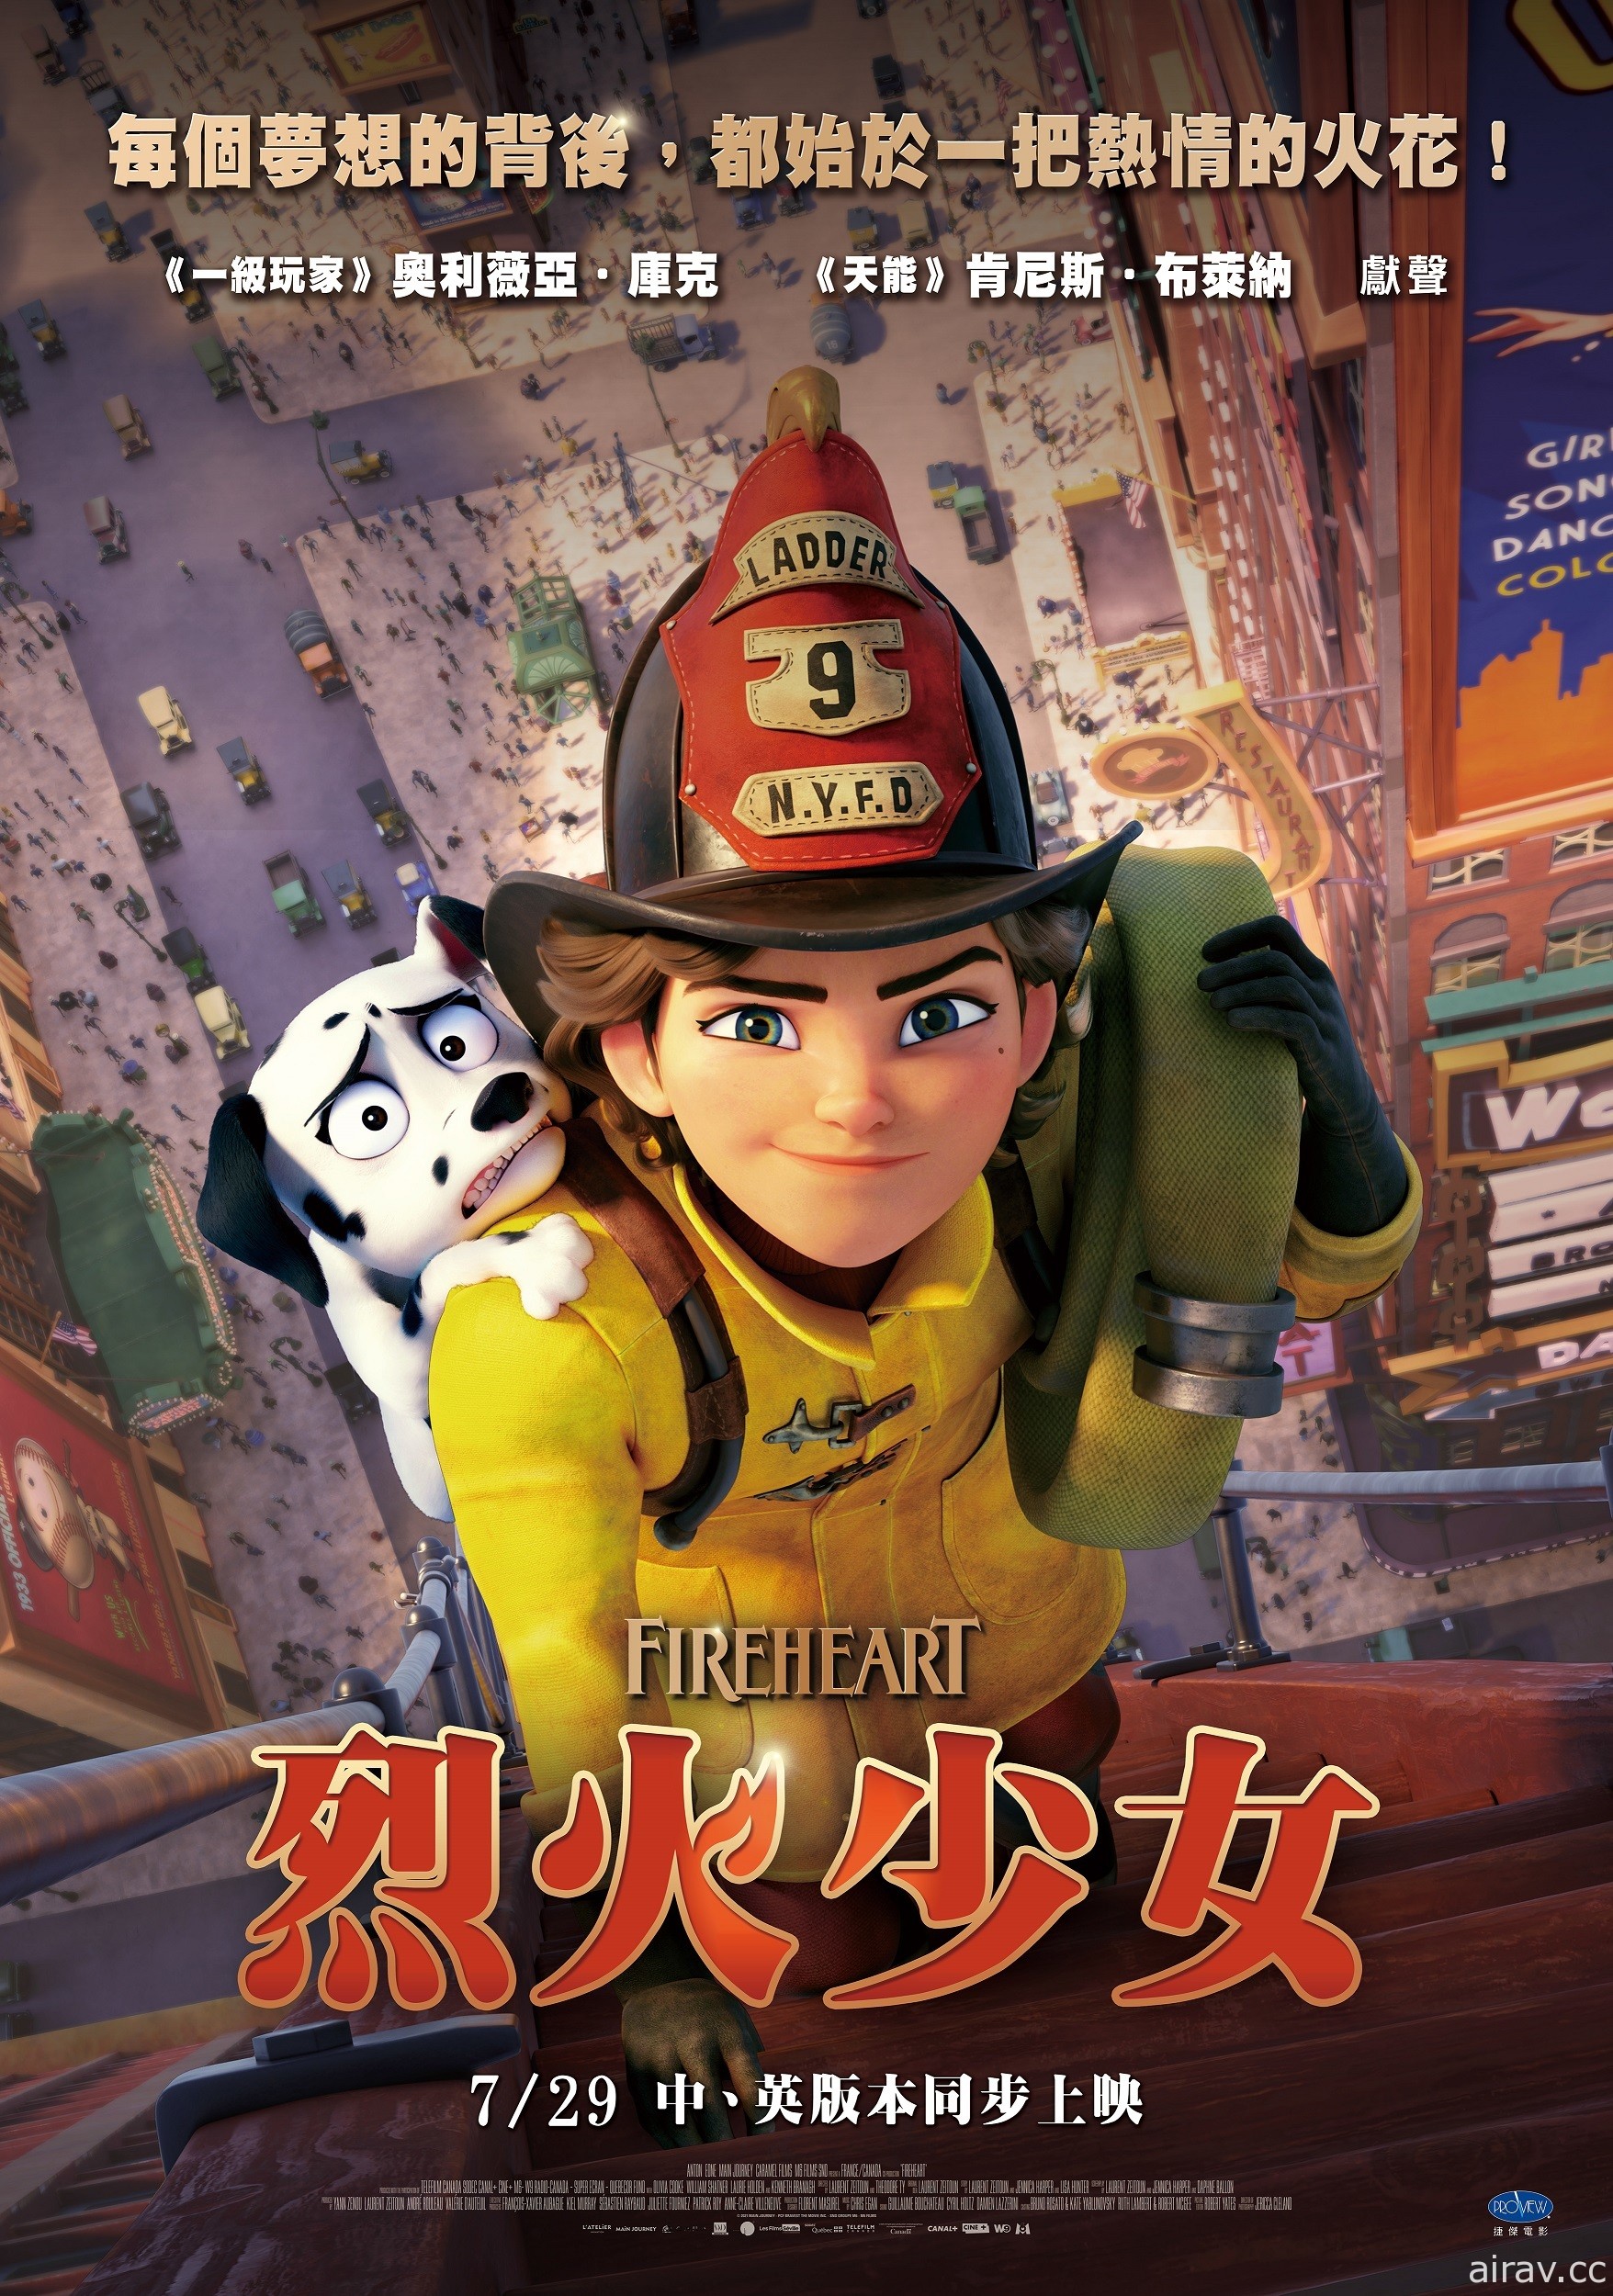 夢想成為消防員《烈火少女》動畫電影 7/29 中英版本同步在台上映